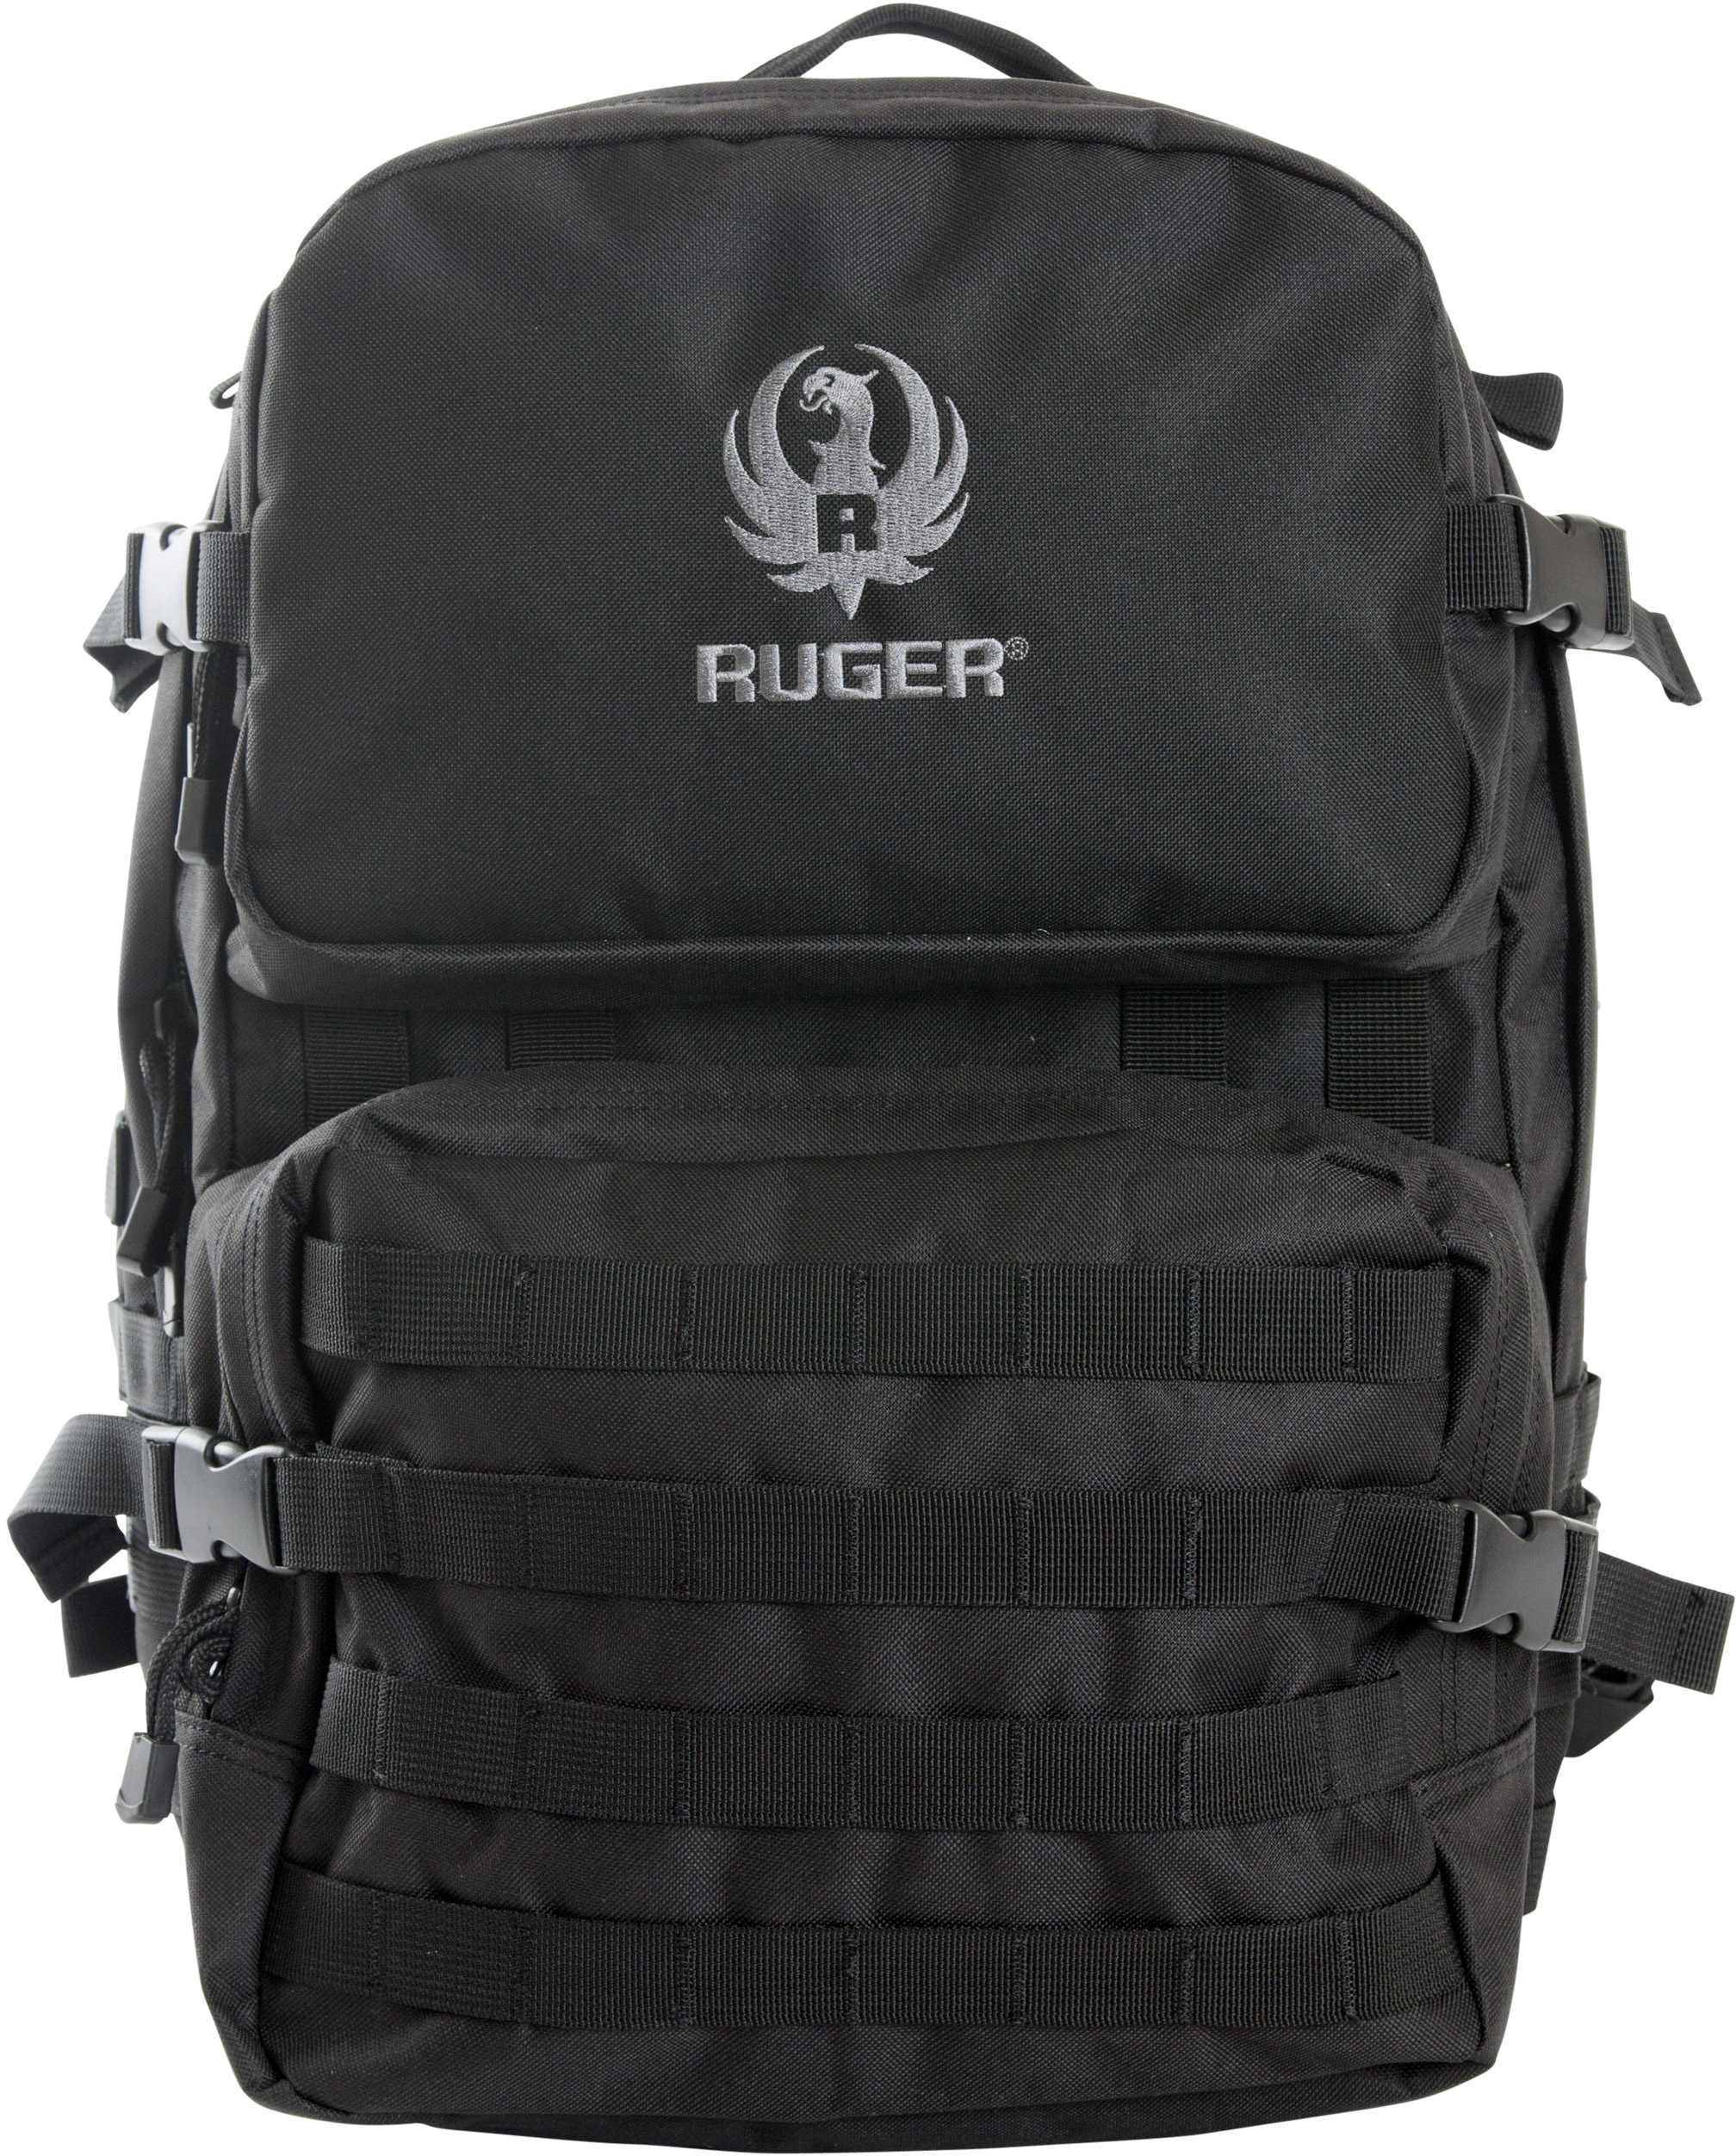 Allen 27962 Ruger® Barricade Tactical Pack Black